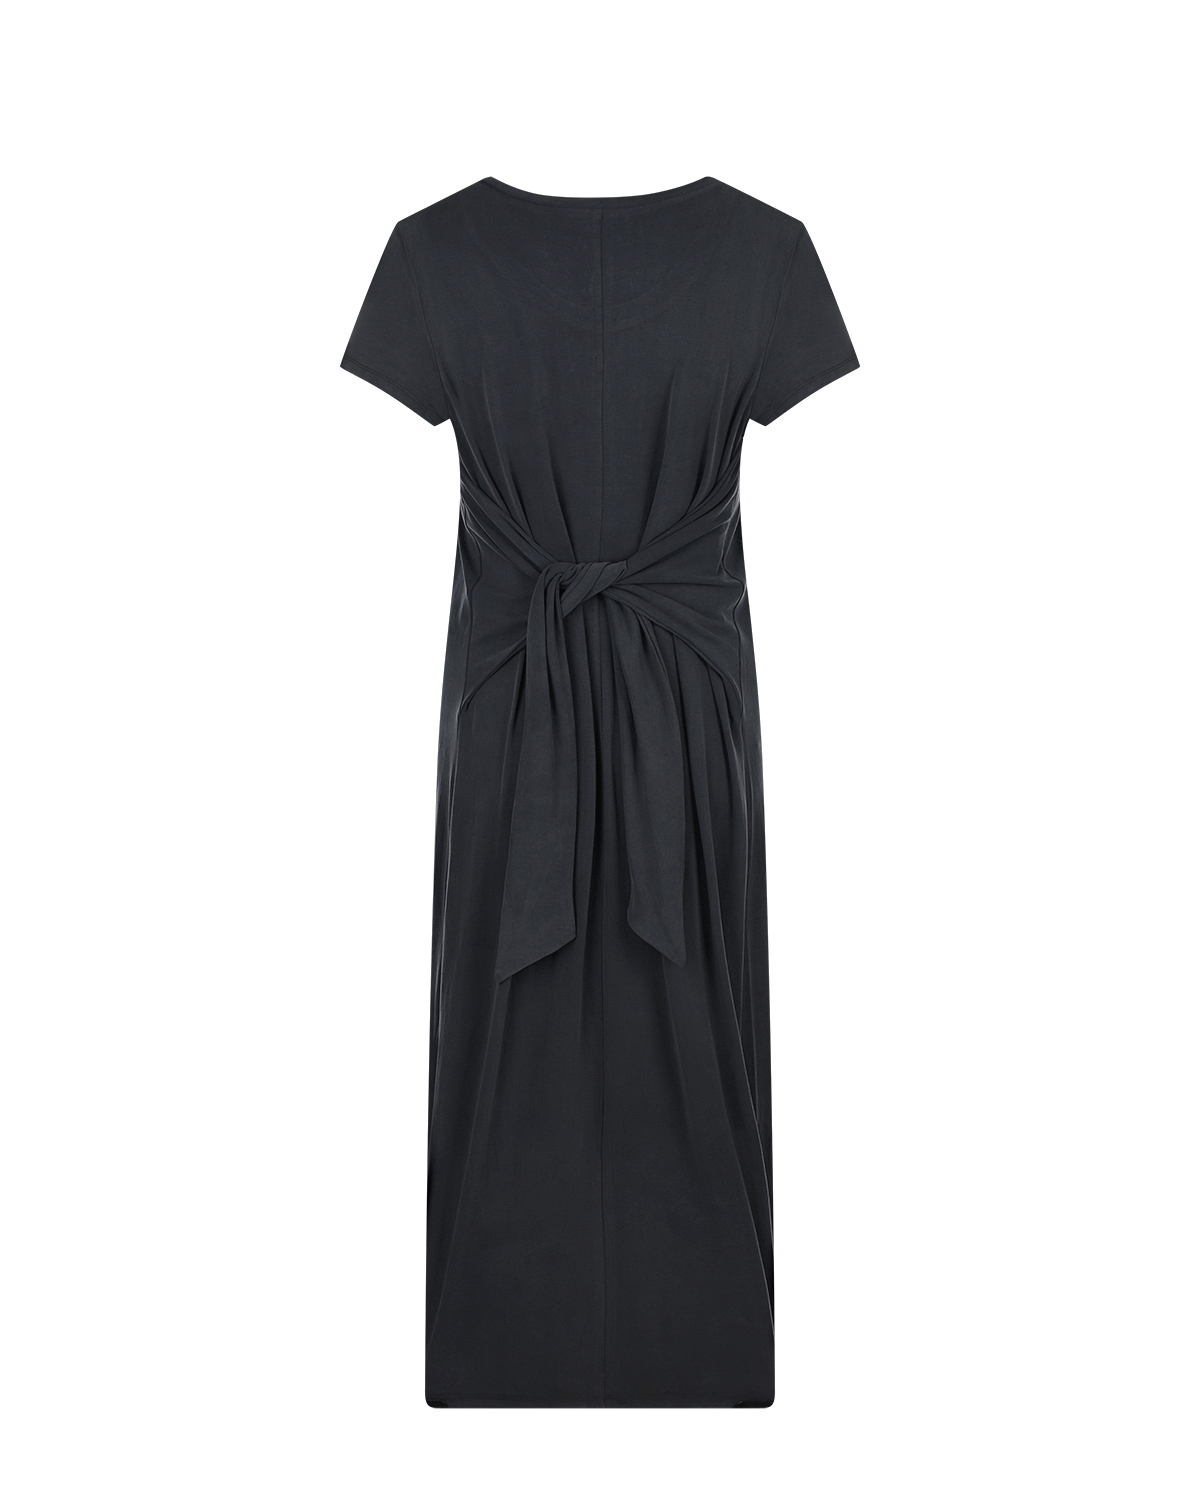 Темно-серое платье с короткими рукавами Attesa, размер 38, цвет серый - фото 5